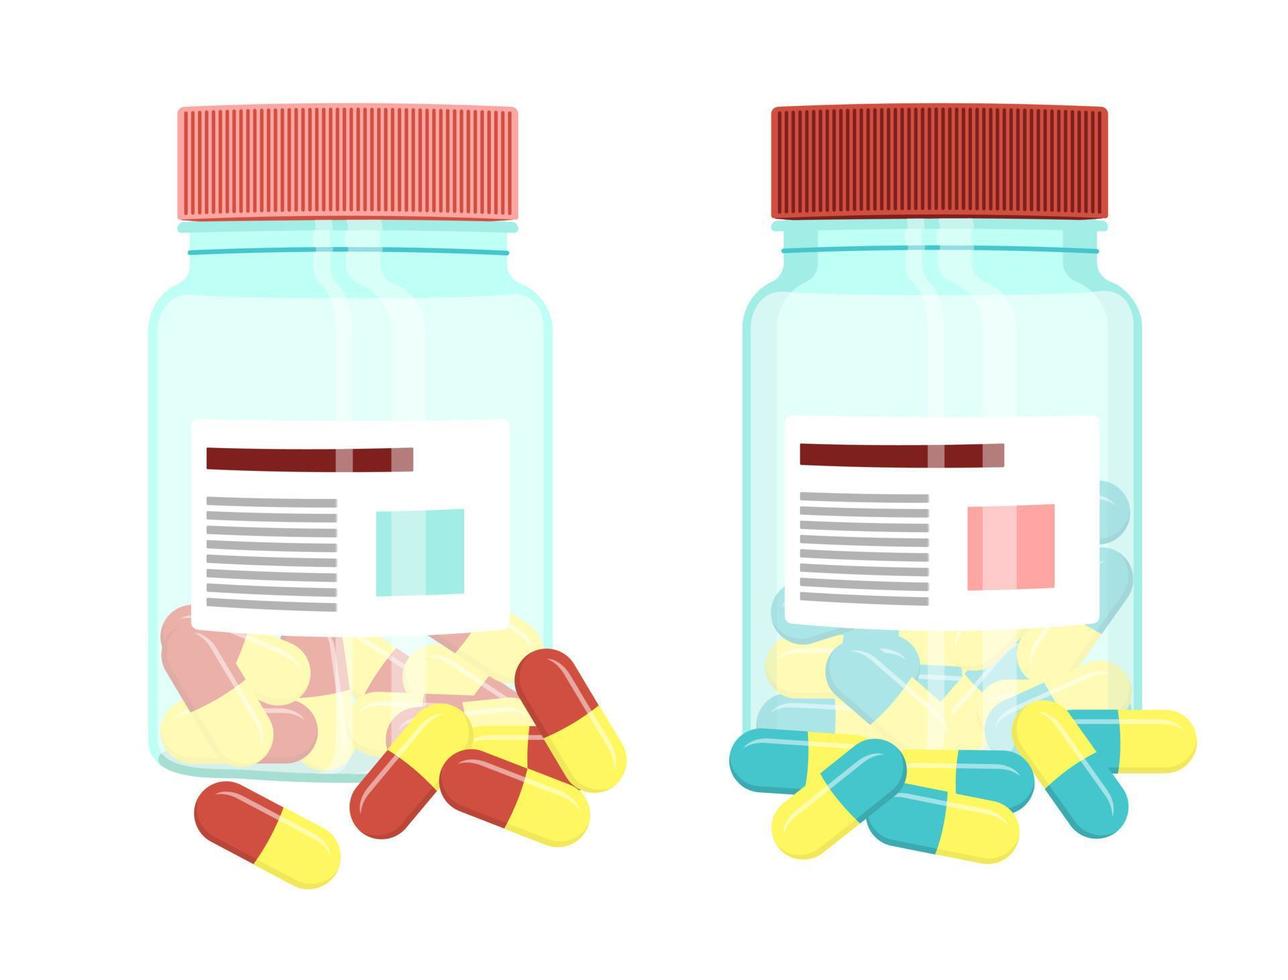 transparente plastikflaschen, hellblaue bernsteinglasflaschen für medikamente mit roten und blauen pillen oder dragee-fläschchen, die mit kappen verschlossen sind, isolierte vektorillustrationen. Verpackung von pharmazeutischen Produkten vektor